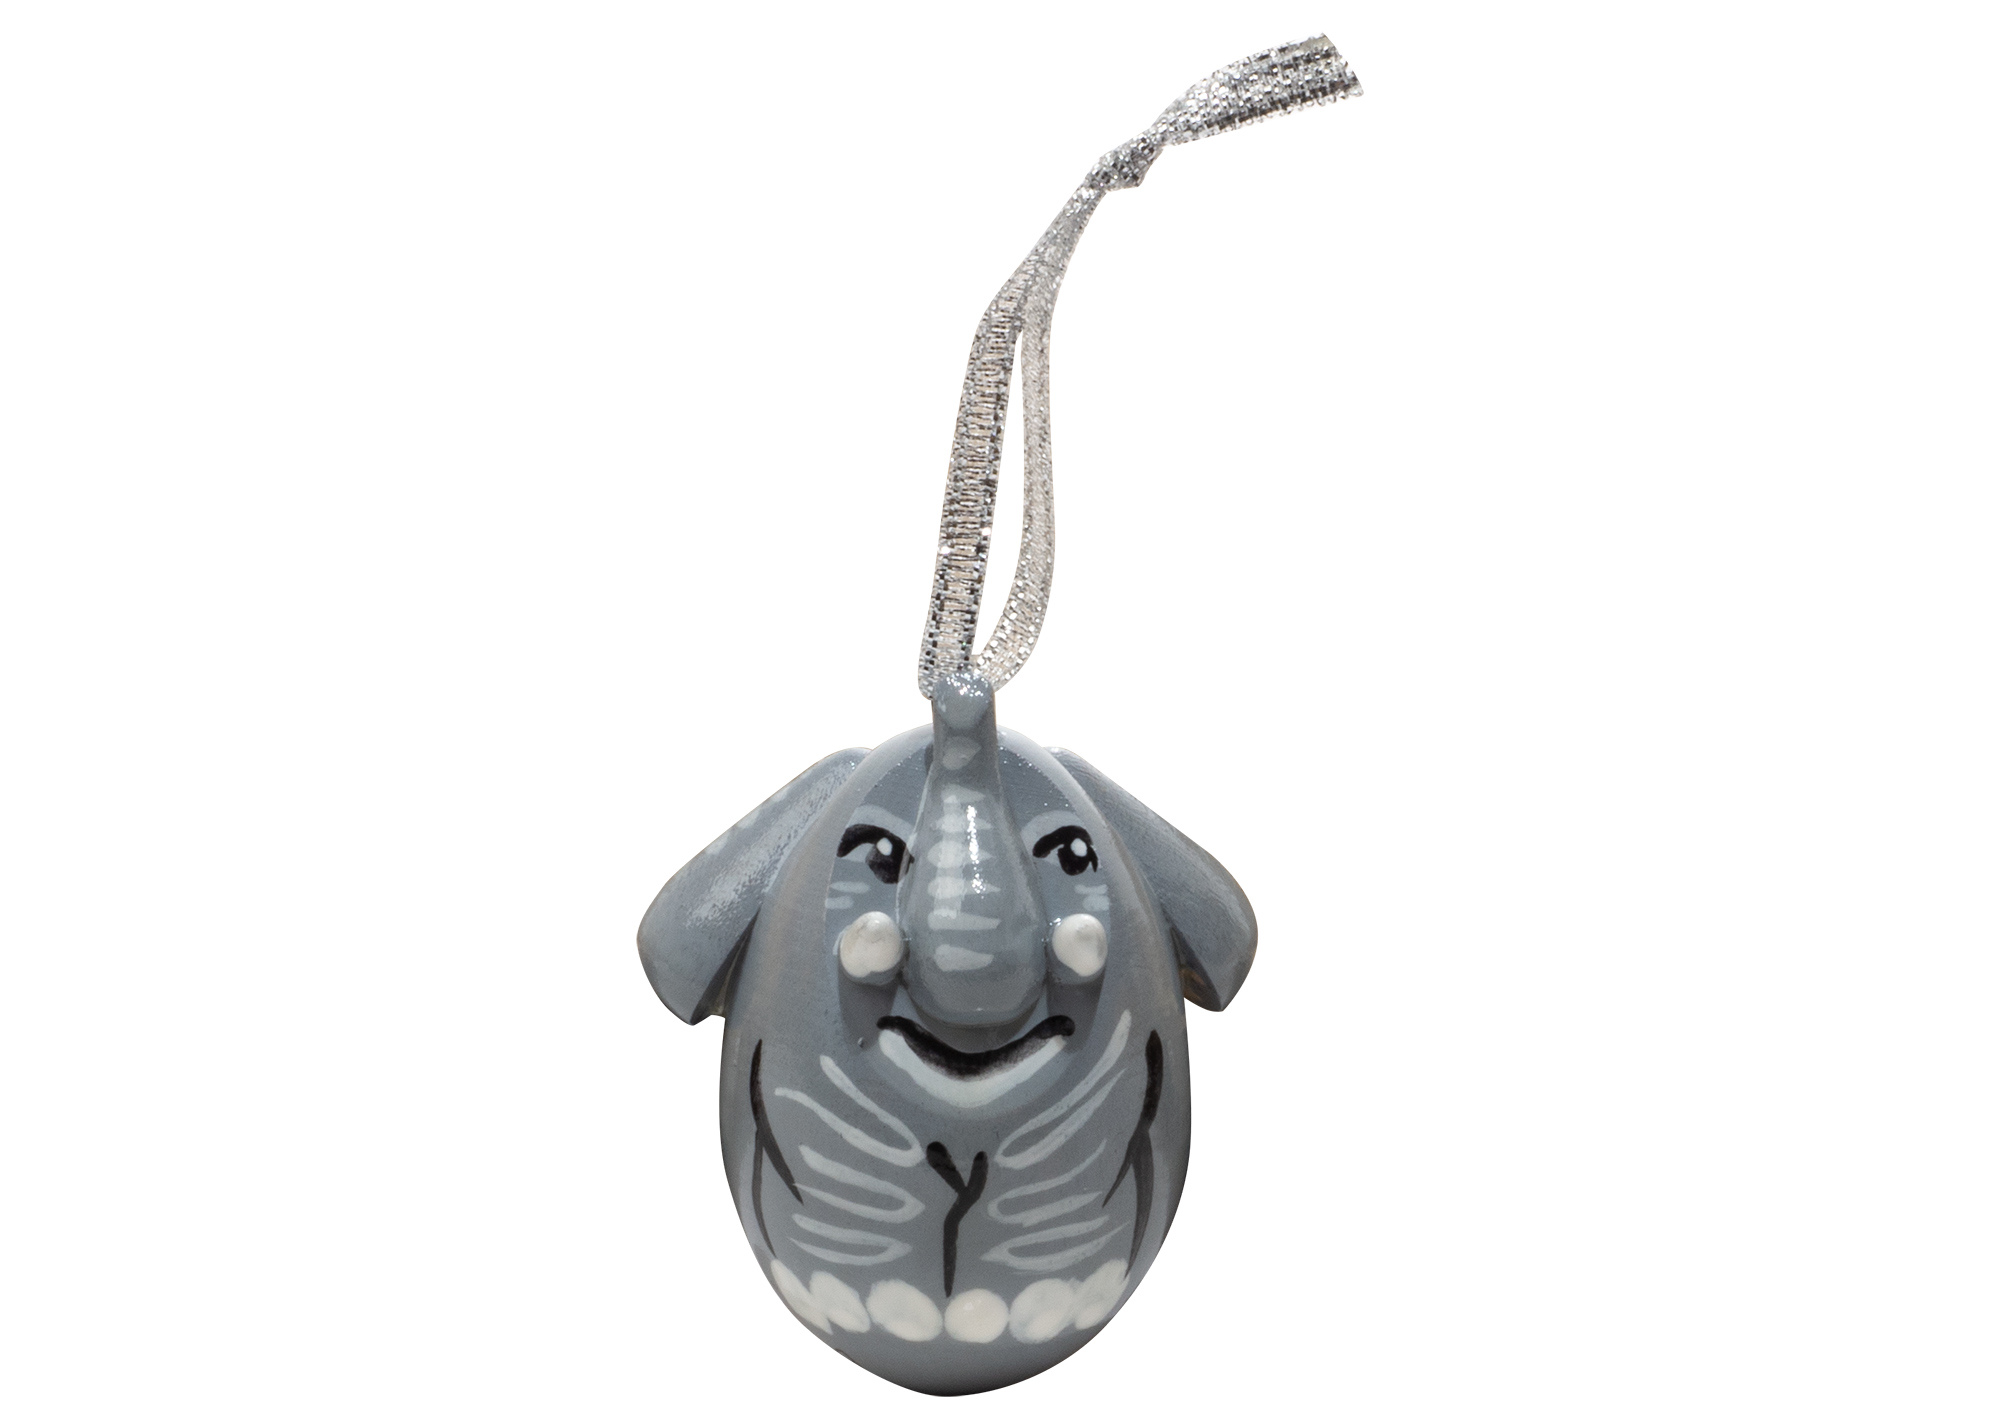 Elephant Christmas Ornament at GoldenCockerel.com